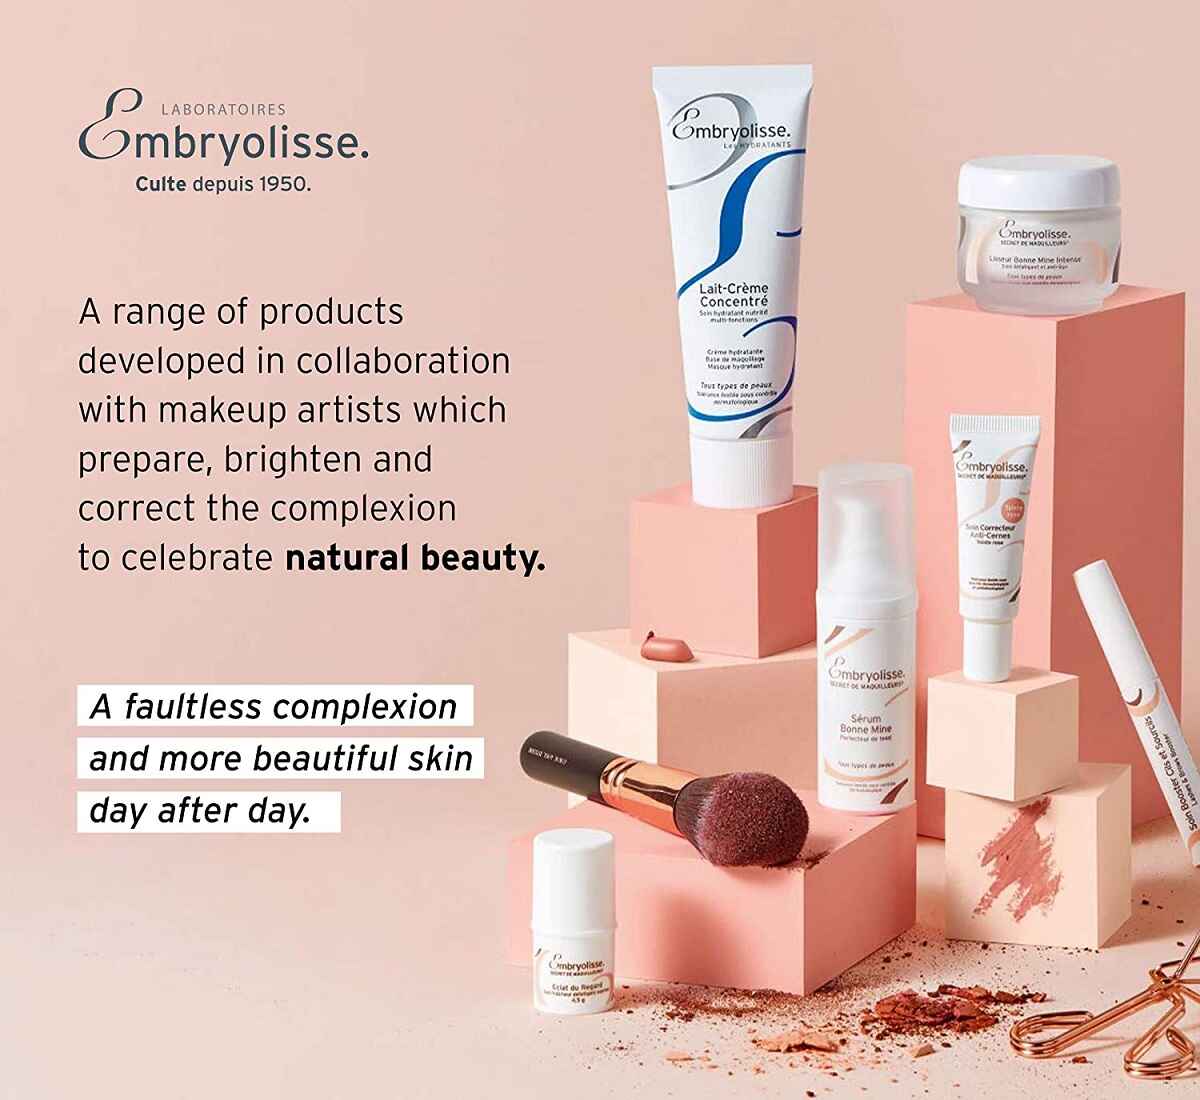 محصولات آرایشی با خواص درمانی و زیبایی برند Embryolisse فرانسه